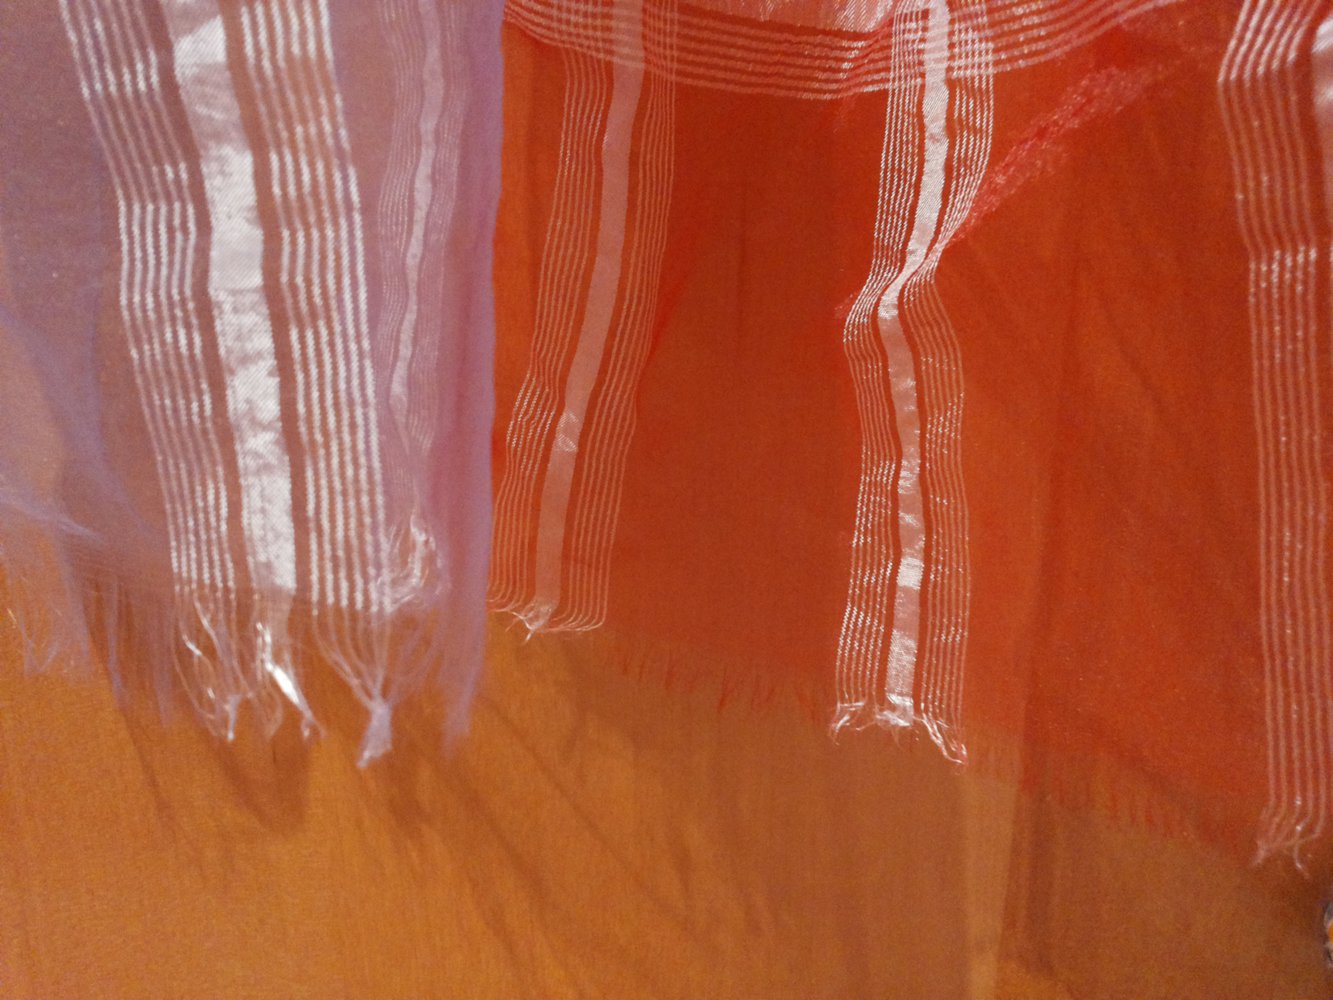 Weiß-karierte dünne Tücher mit Fransen in flieder und rot